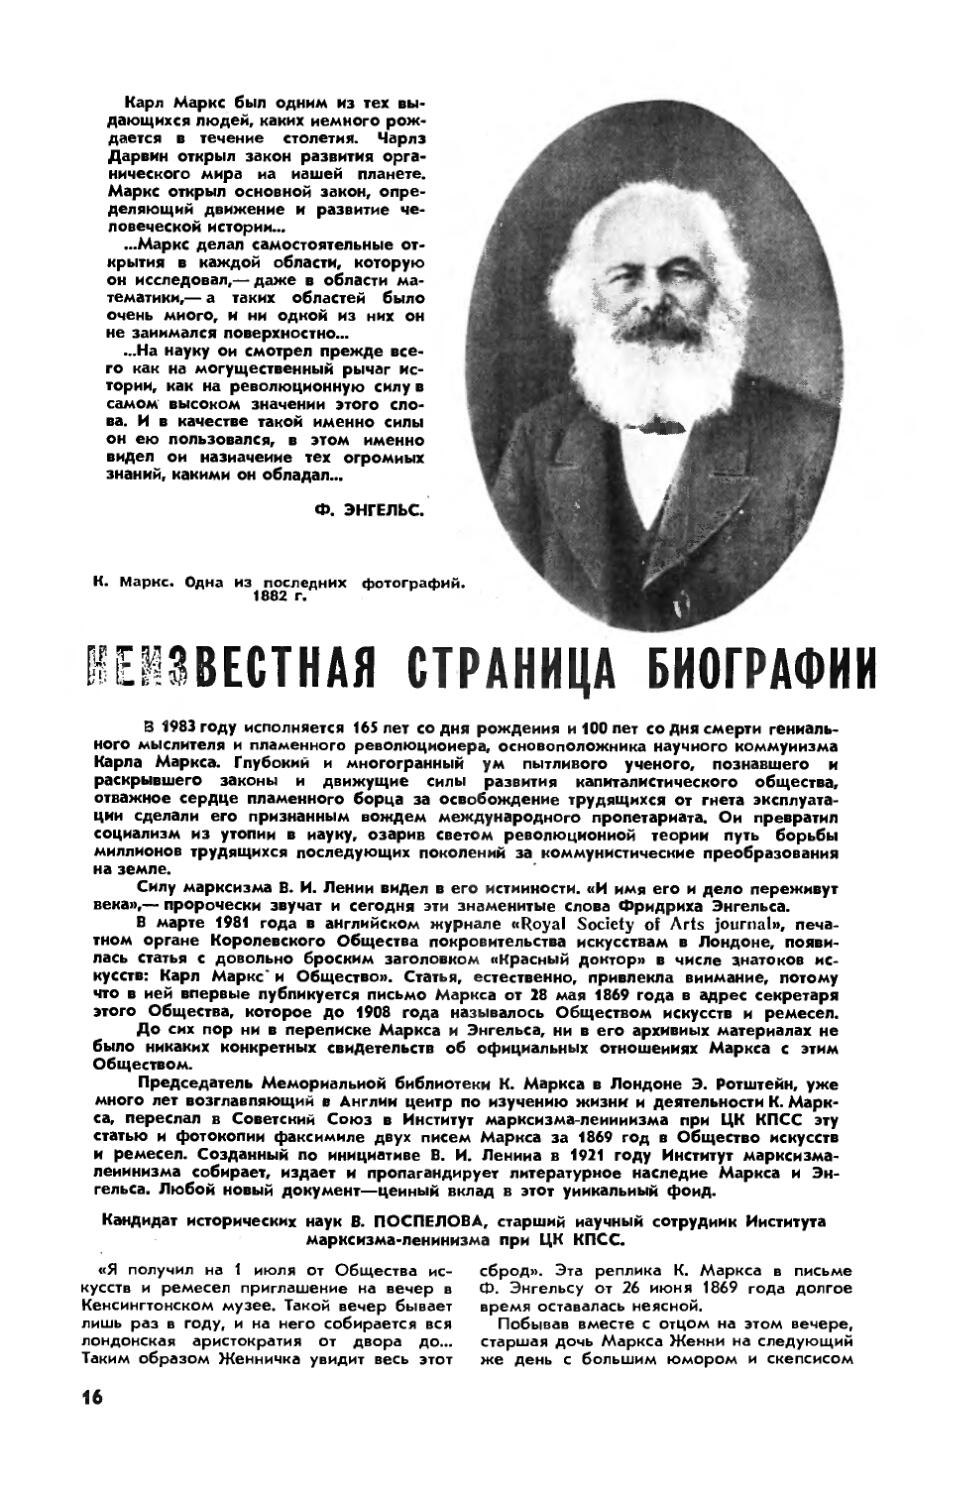 В. ПОСПЕЛОВА, канд. ист. наук — Неизвестная страница биографии К. Маркса